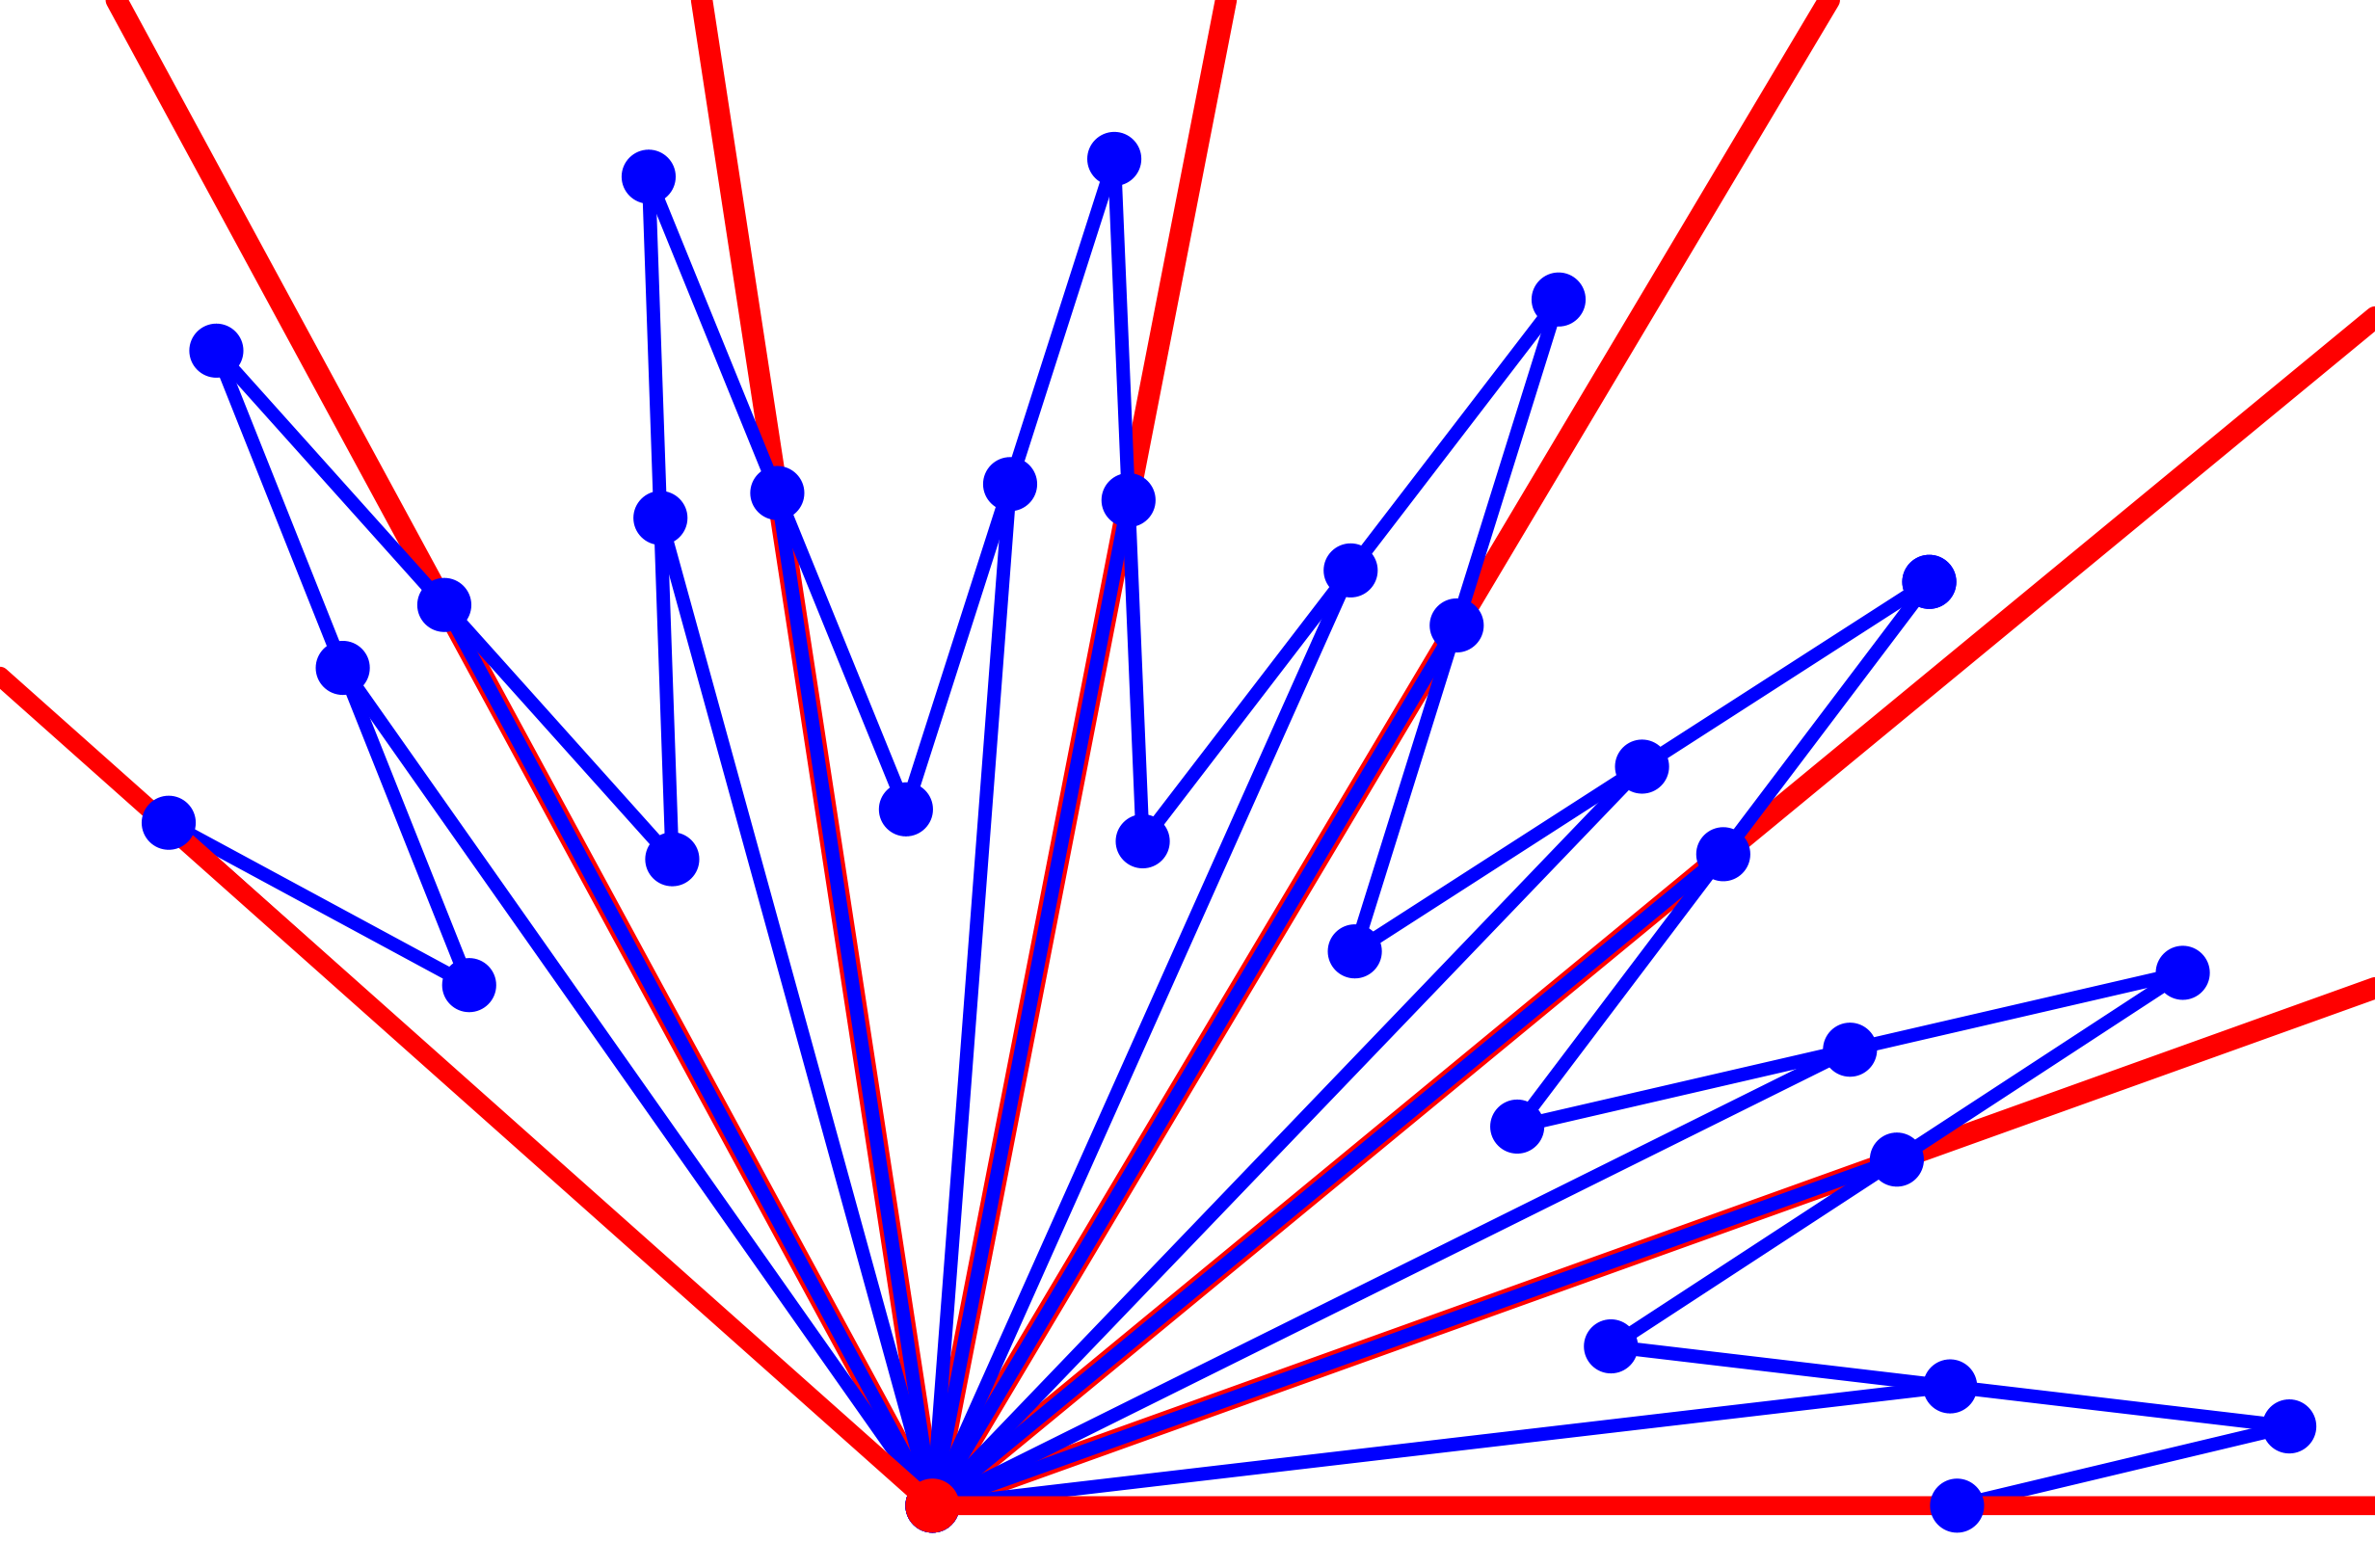 Ein Bild, das Farbigkeit, Laser, Reihe, Electric Blue (Farbe) enthält.

Automatisch generierte Beschreibung